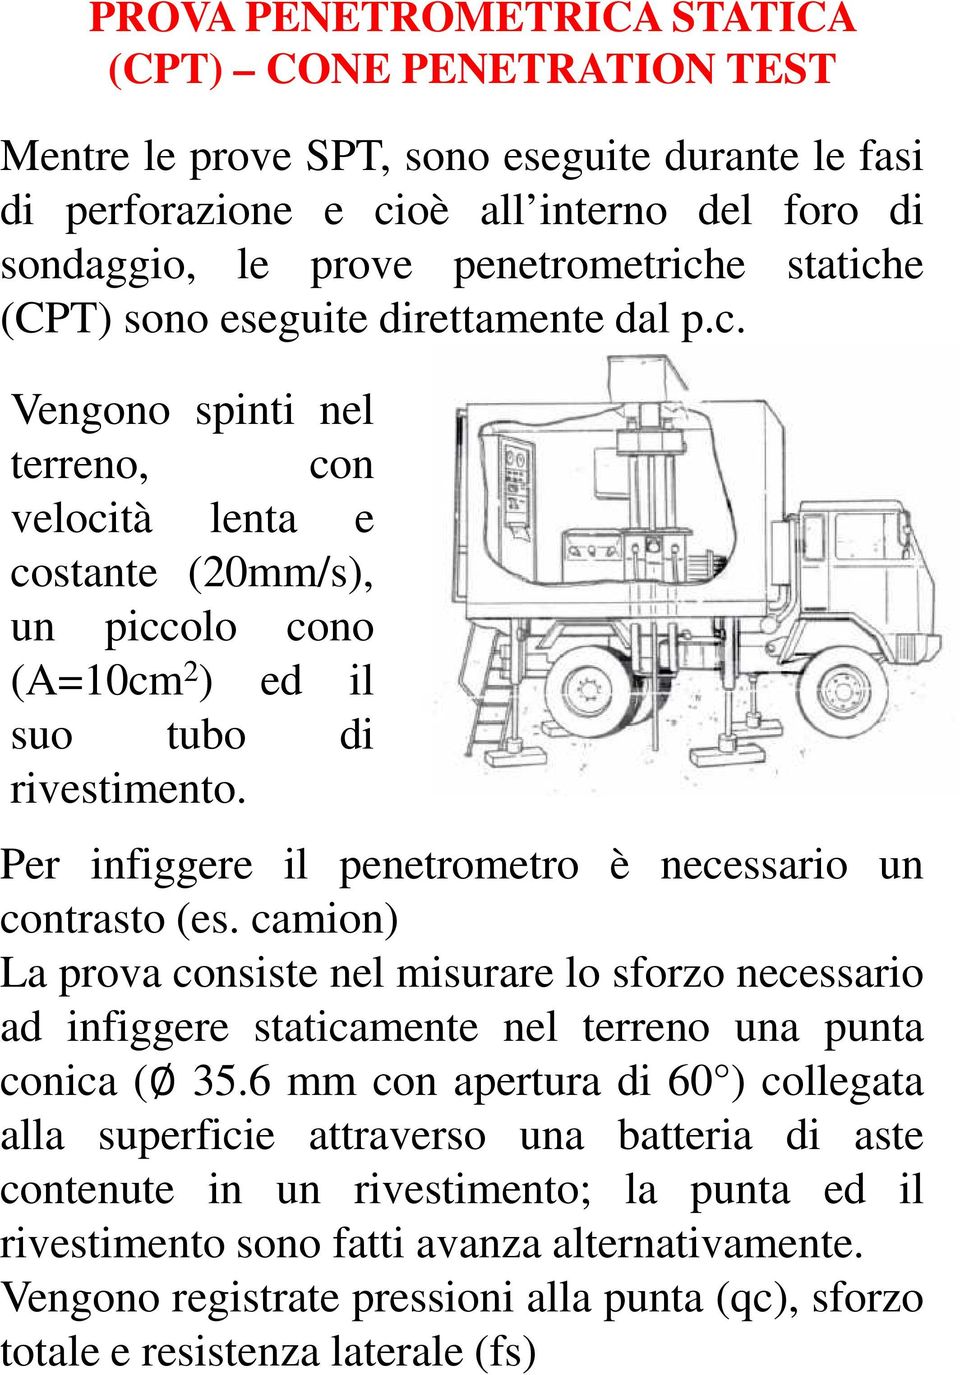 Per infiggere il penetrometro è necessario un contrasto (es. camion) La prova consiste nel misurare lo sforzo necessario ad infiggere staticamente nel terreno una punta conica ( 35.